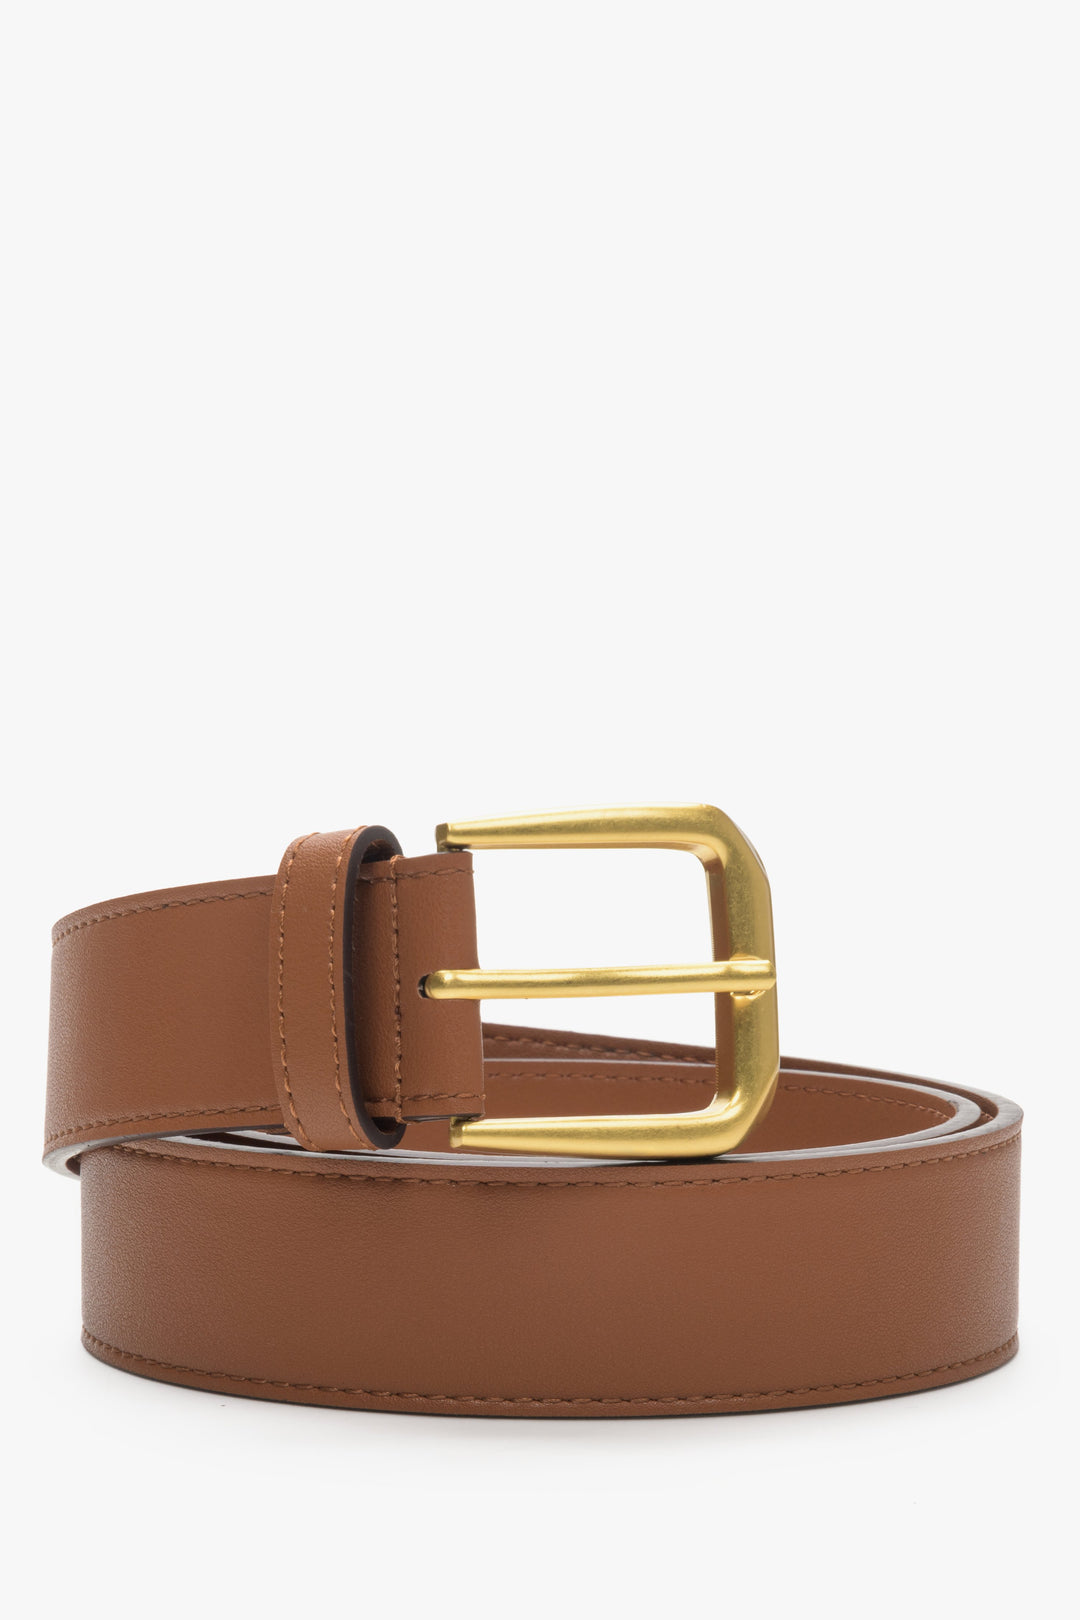 Brown women's belt with gold buckle Estro.